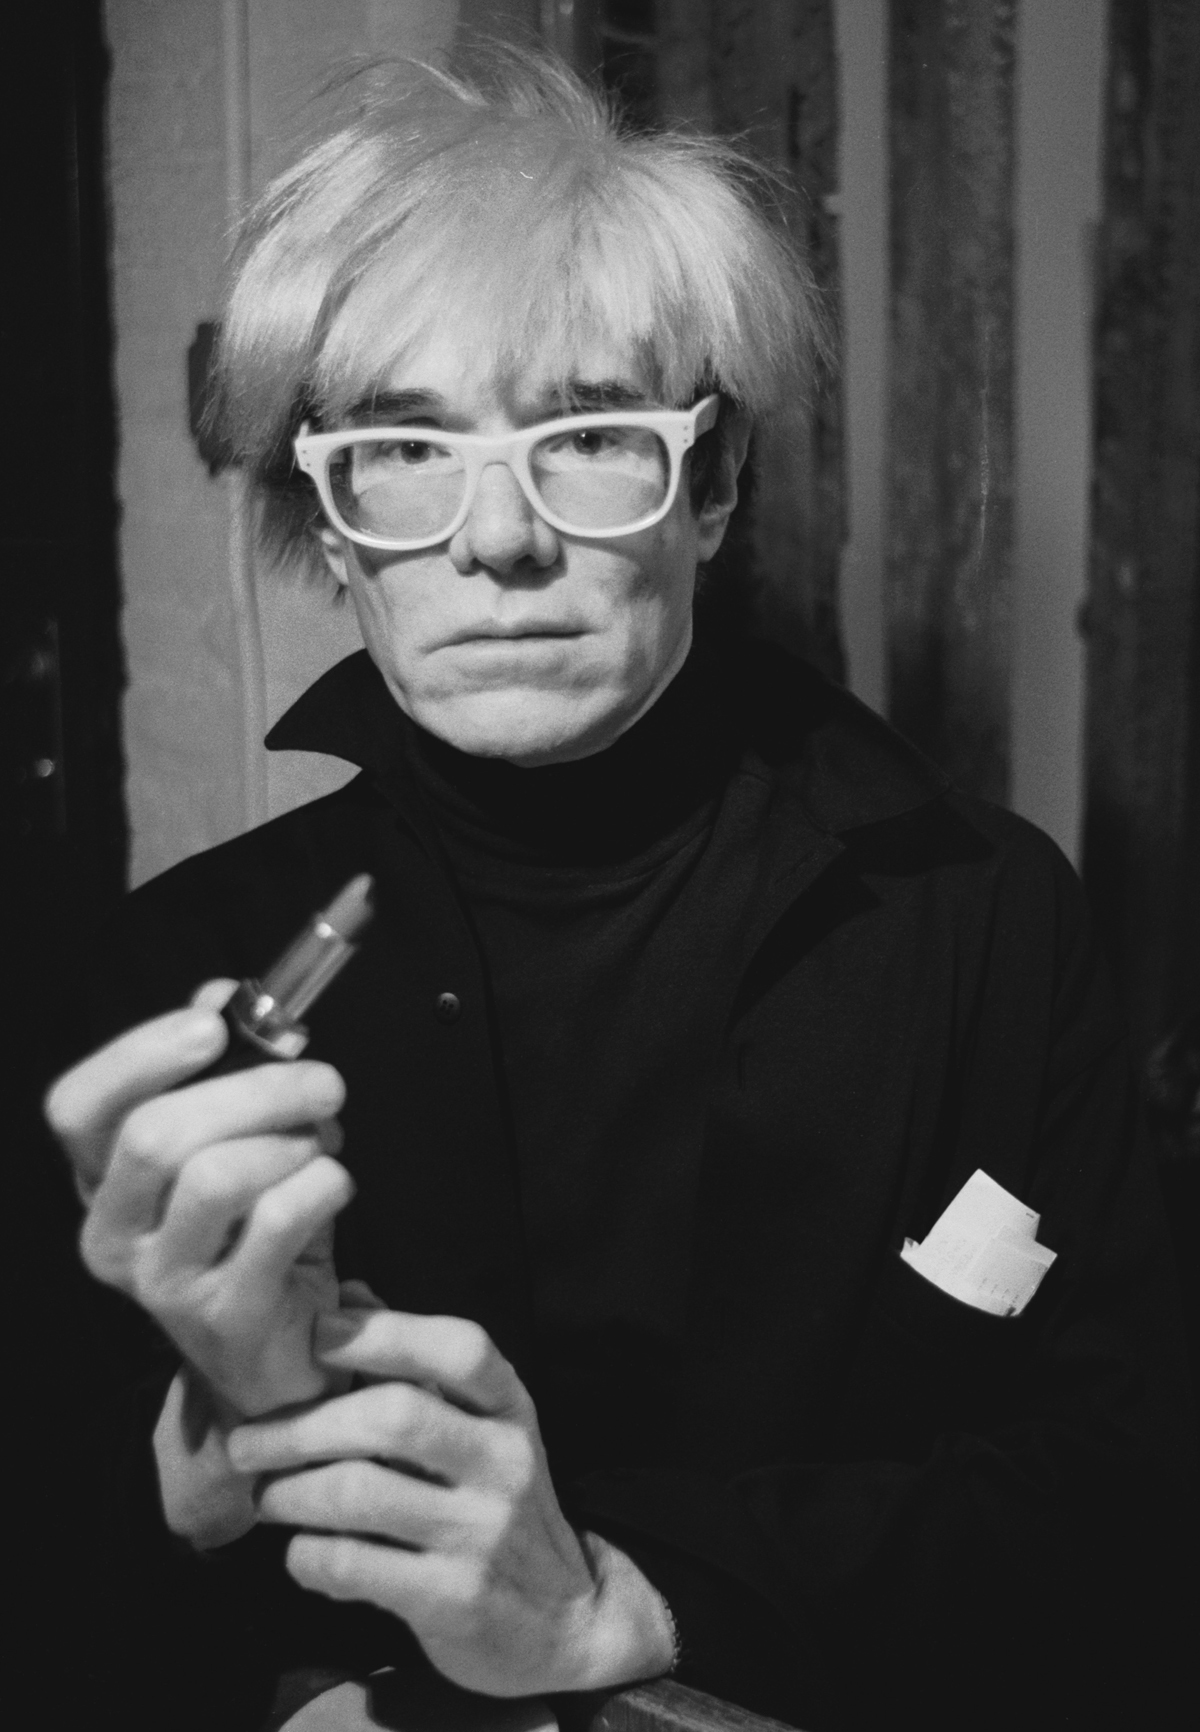 Retrato de Andy Warhol en 1985